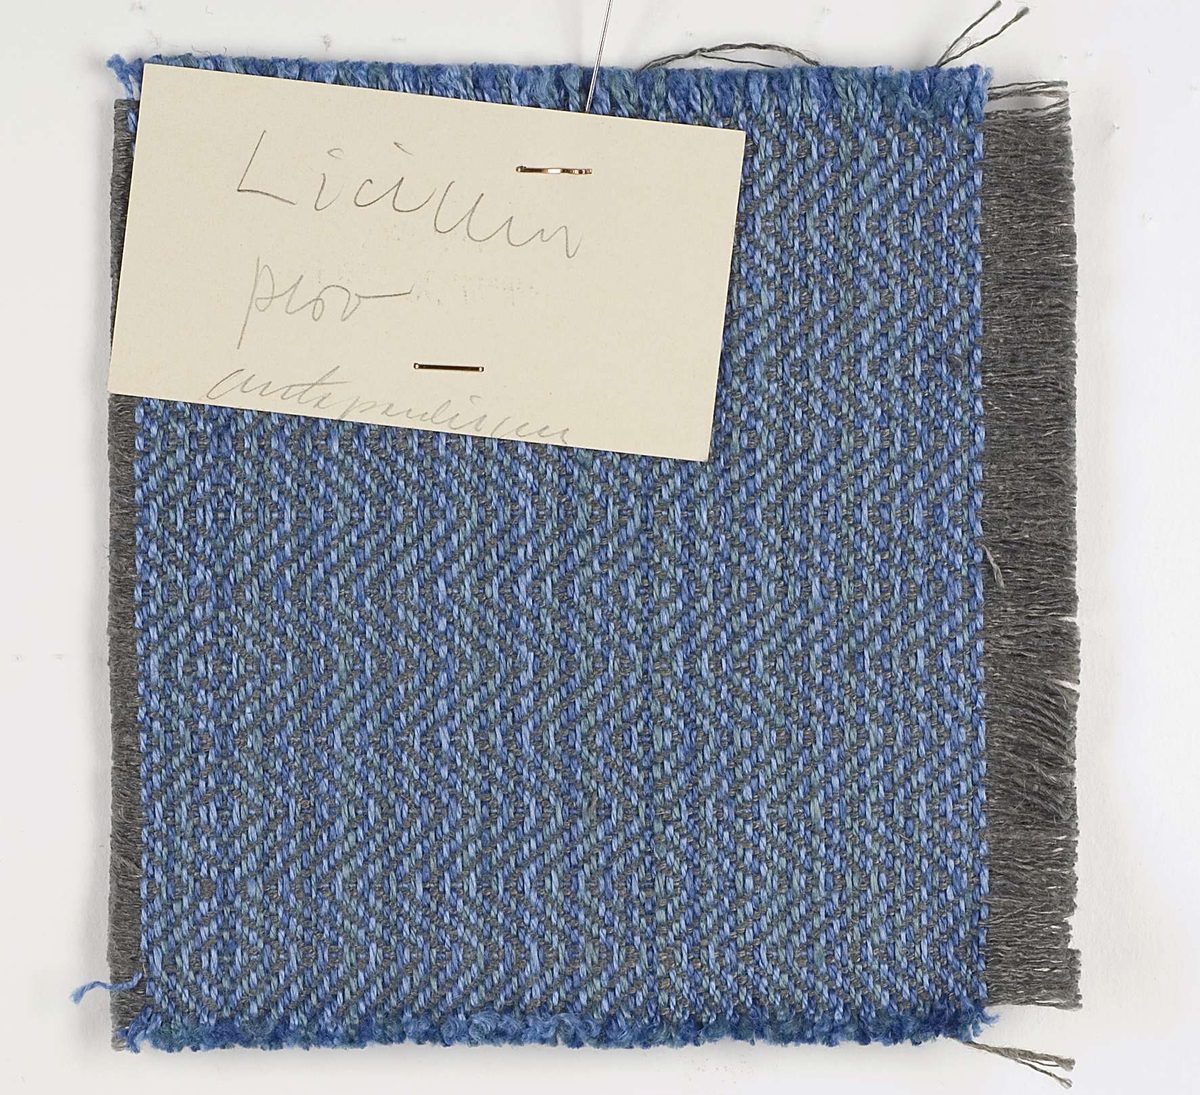 Vävprov, blått, vävt i kypert av lin.
Vid vävprovet sitter en lapp med något otydlig text: "Licium prov antependium".